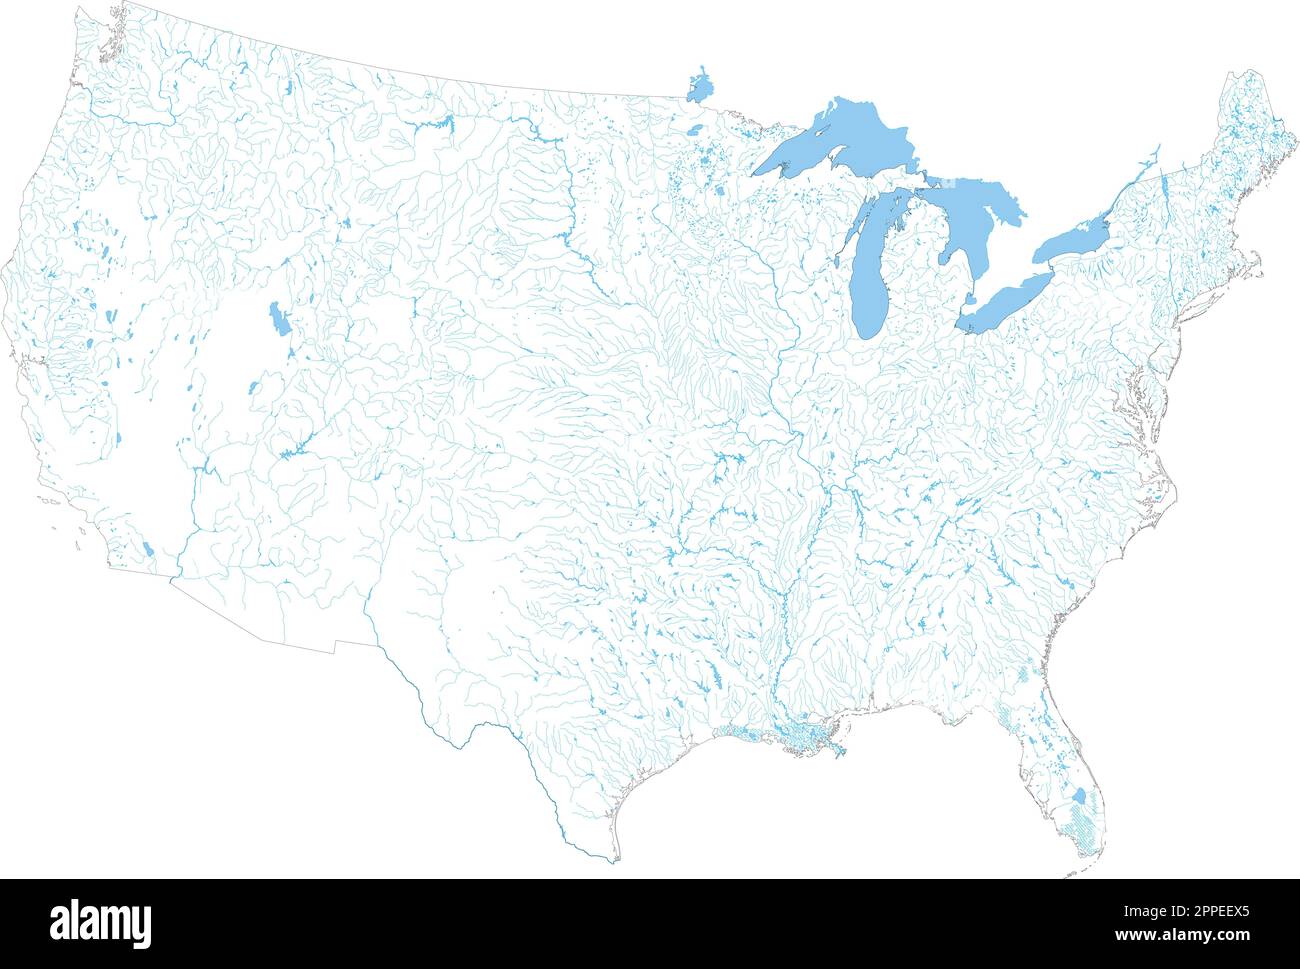 Komplexe US-Flusskarte mit allen wichtigen Flüssen und Seen. Stock Vektor